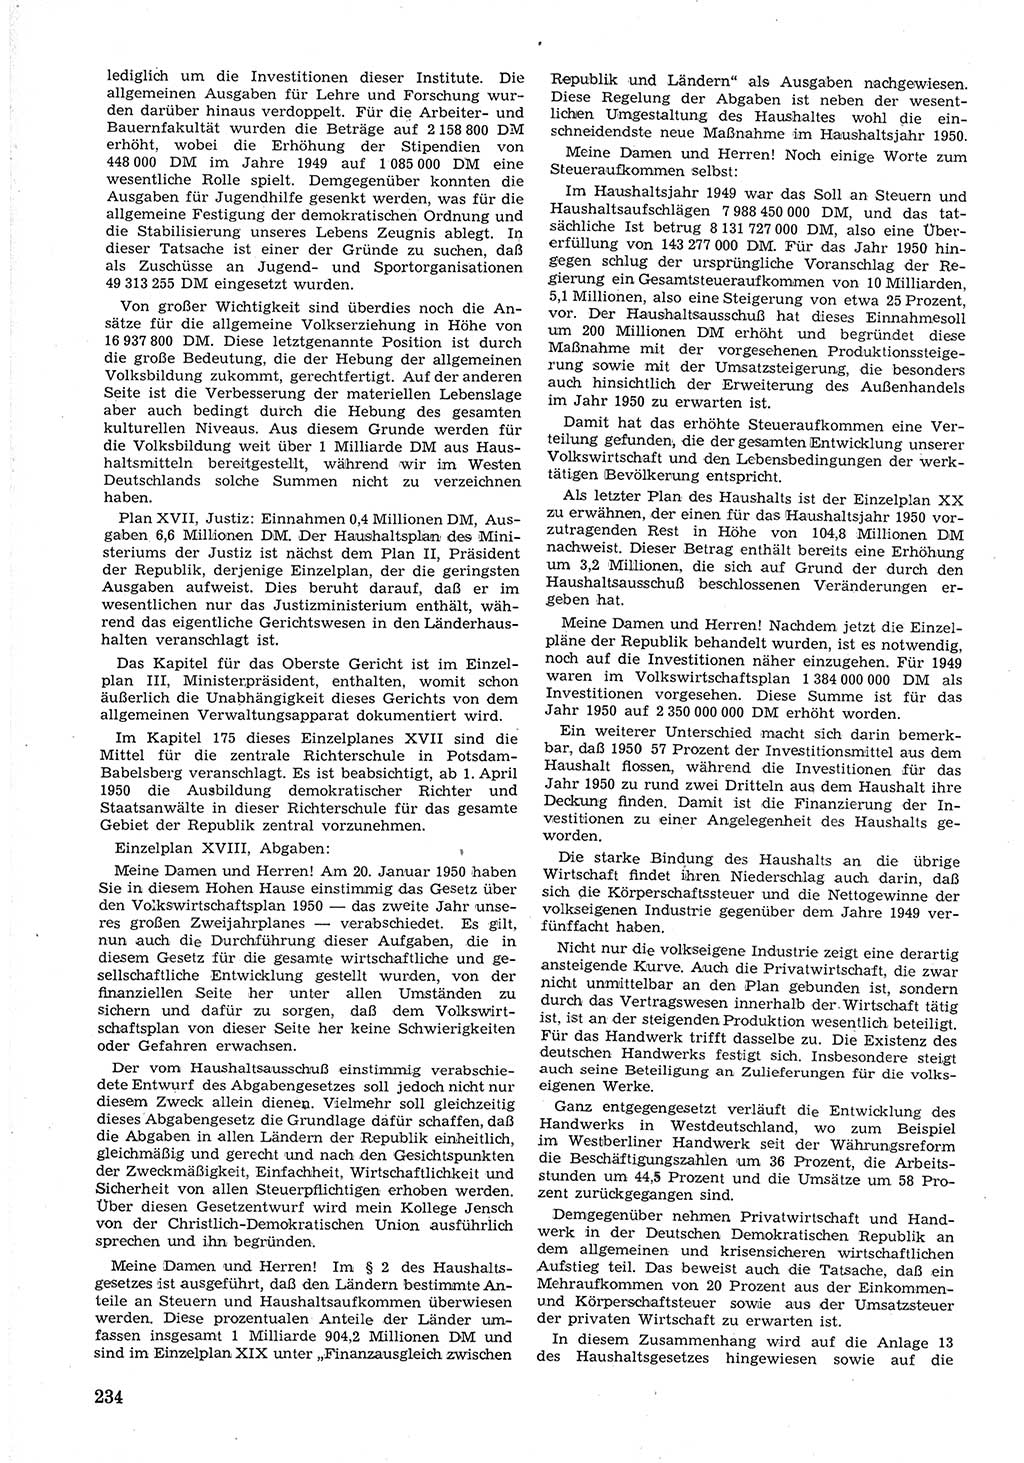 Provisorische Volkskammer (VK) der Deutschen Demokratischen Republik (DDR) 1949-1950, Dokument 248 (Prov. VK DDR 1949-1950, Dok. 248)